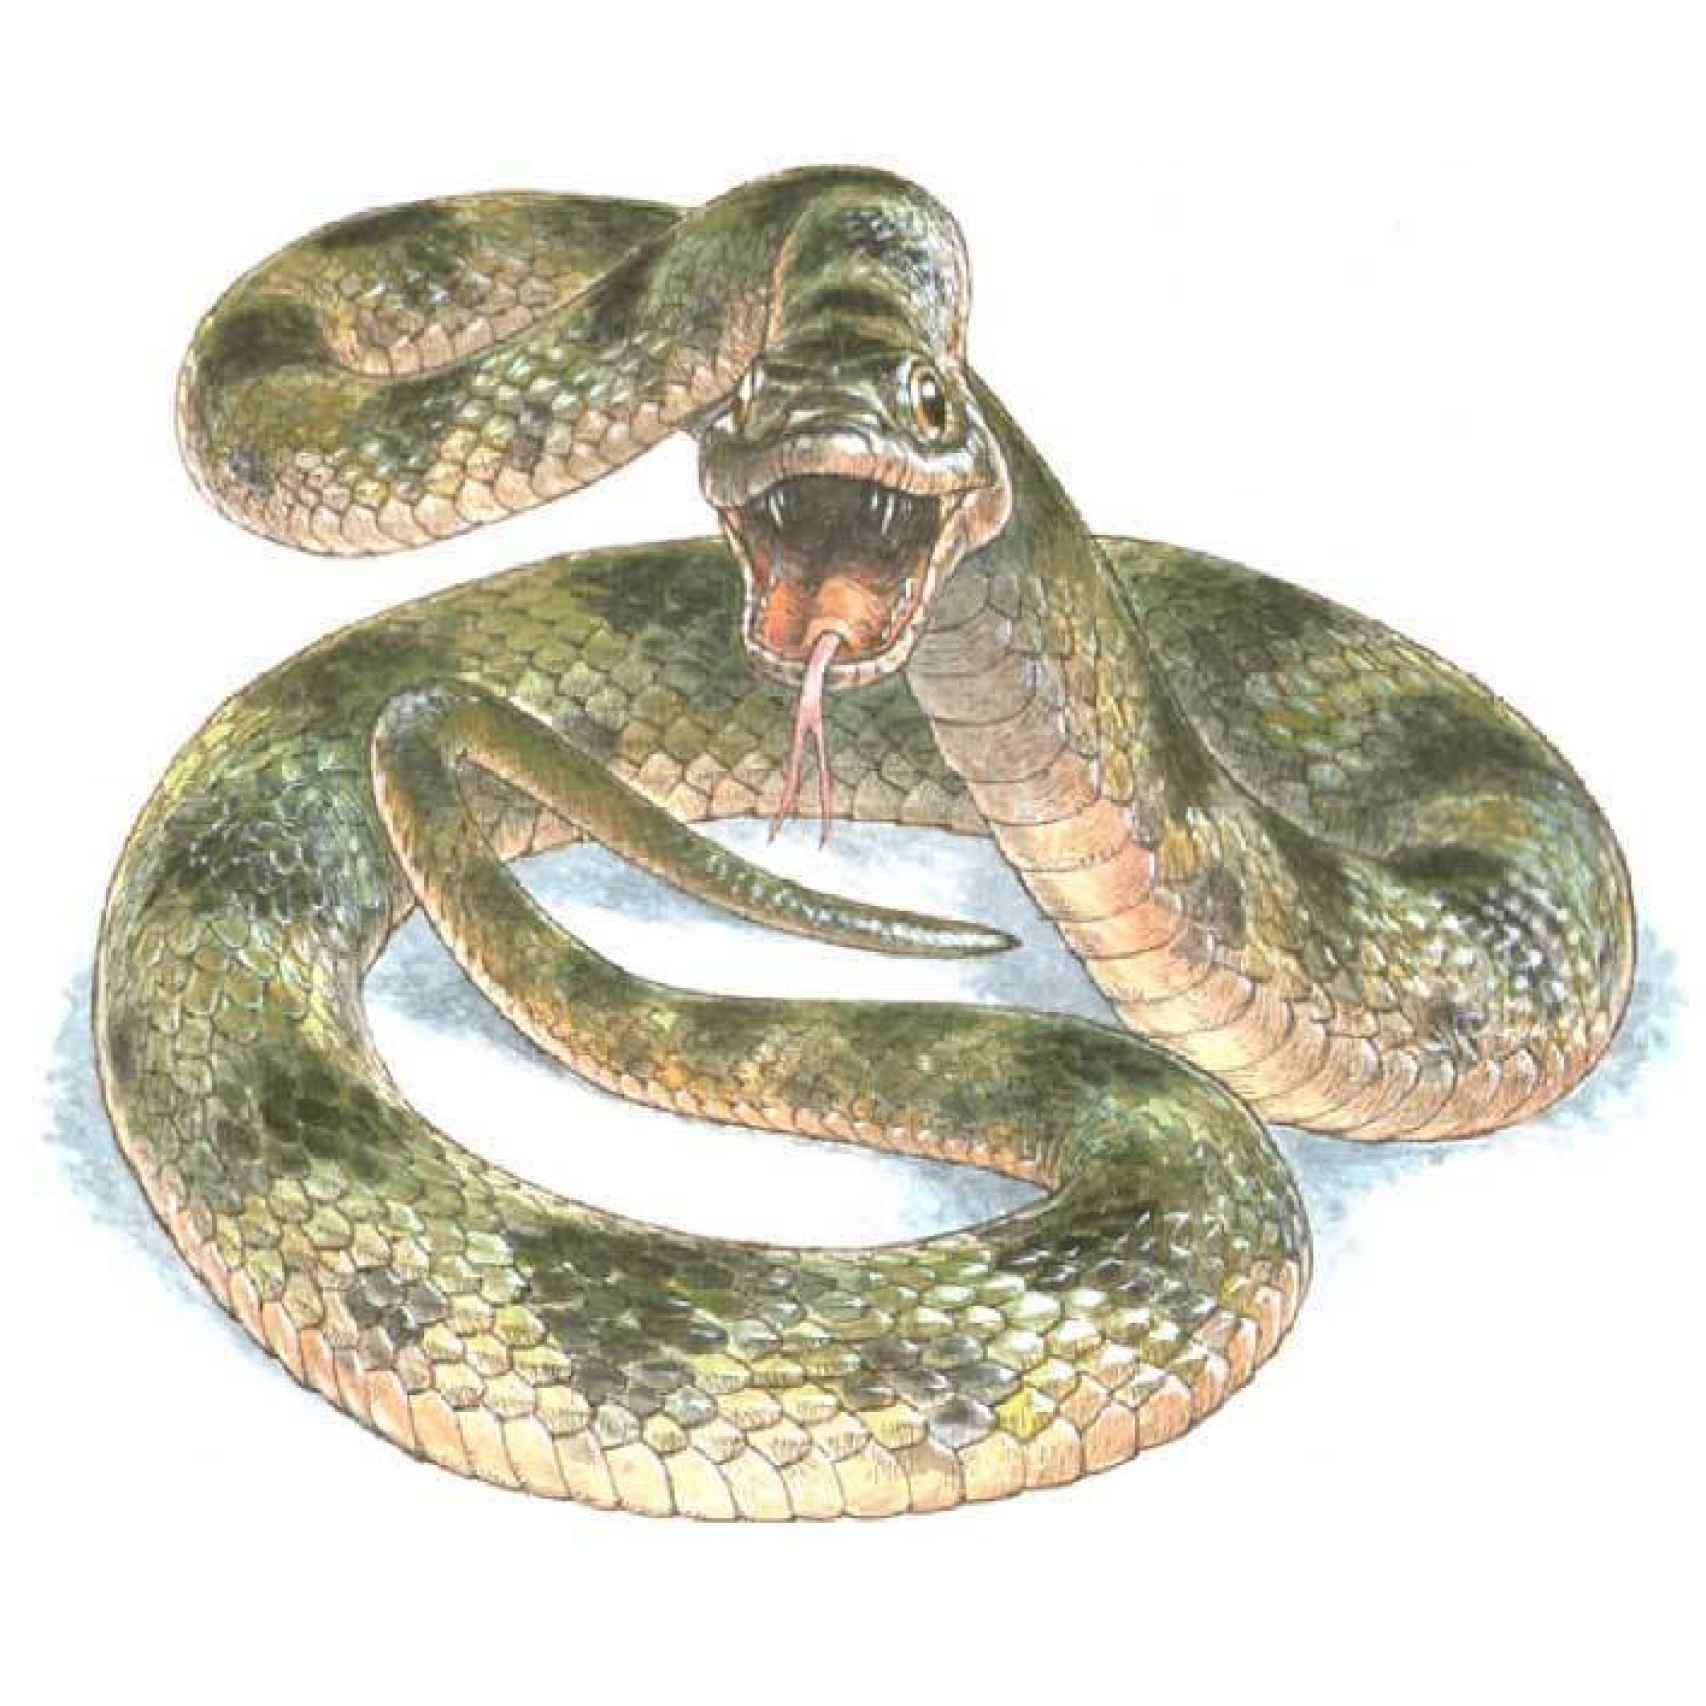 La representación de la serpiente con sus colores reales.